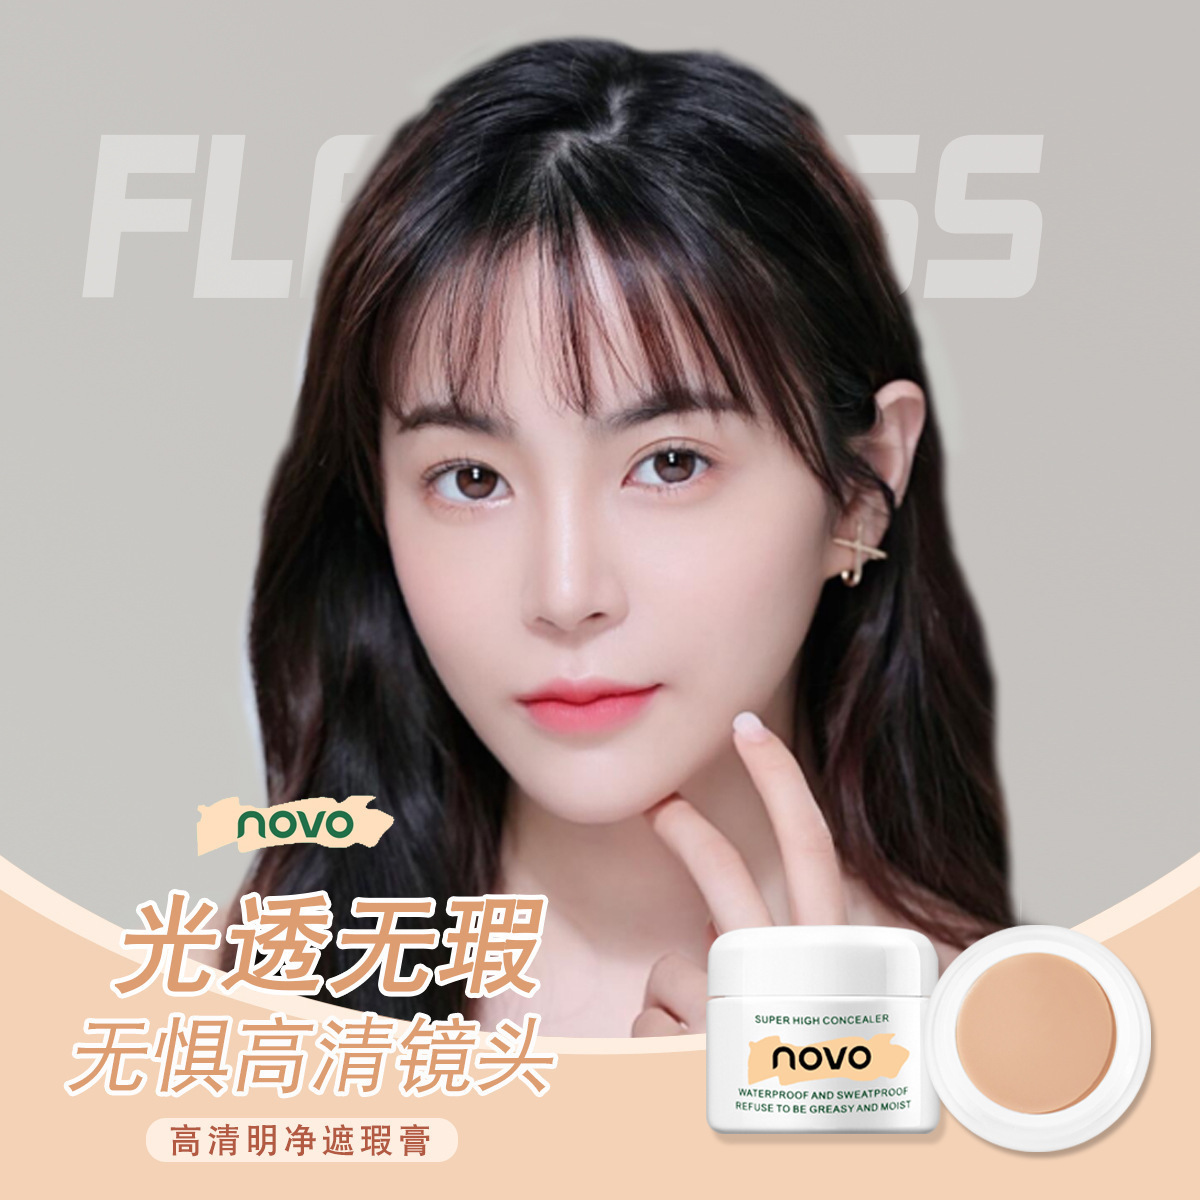 Makeup Novo HD Clear Concealer Strong Cover Fleck Facial Acne Marks Acne Dark Circles Foundation Cream